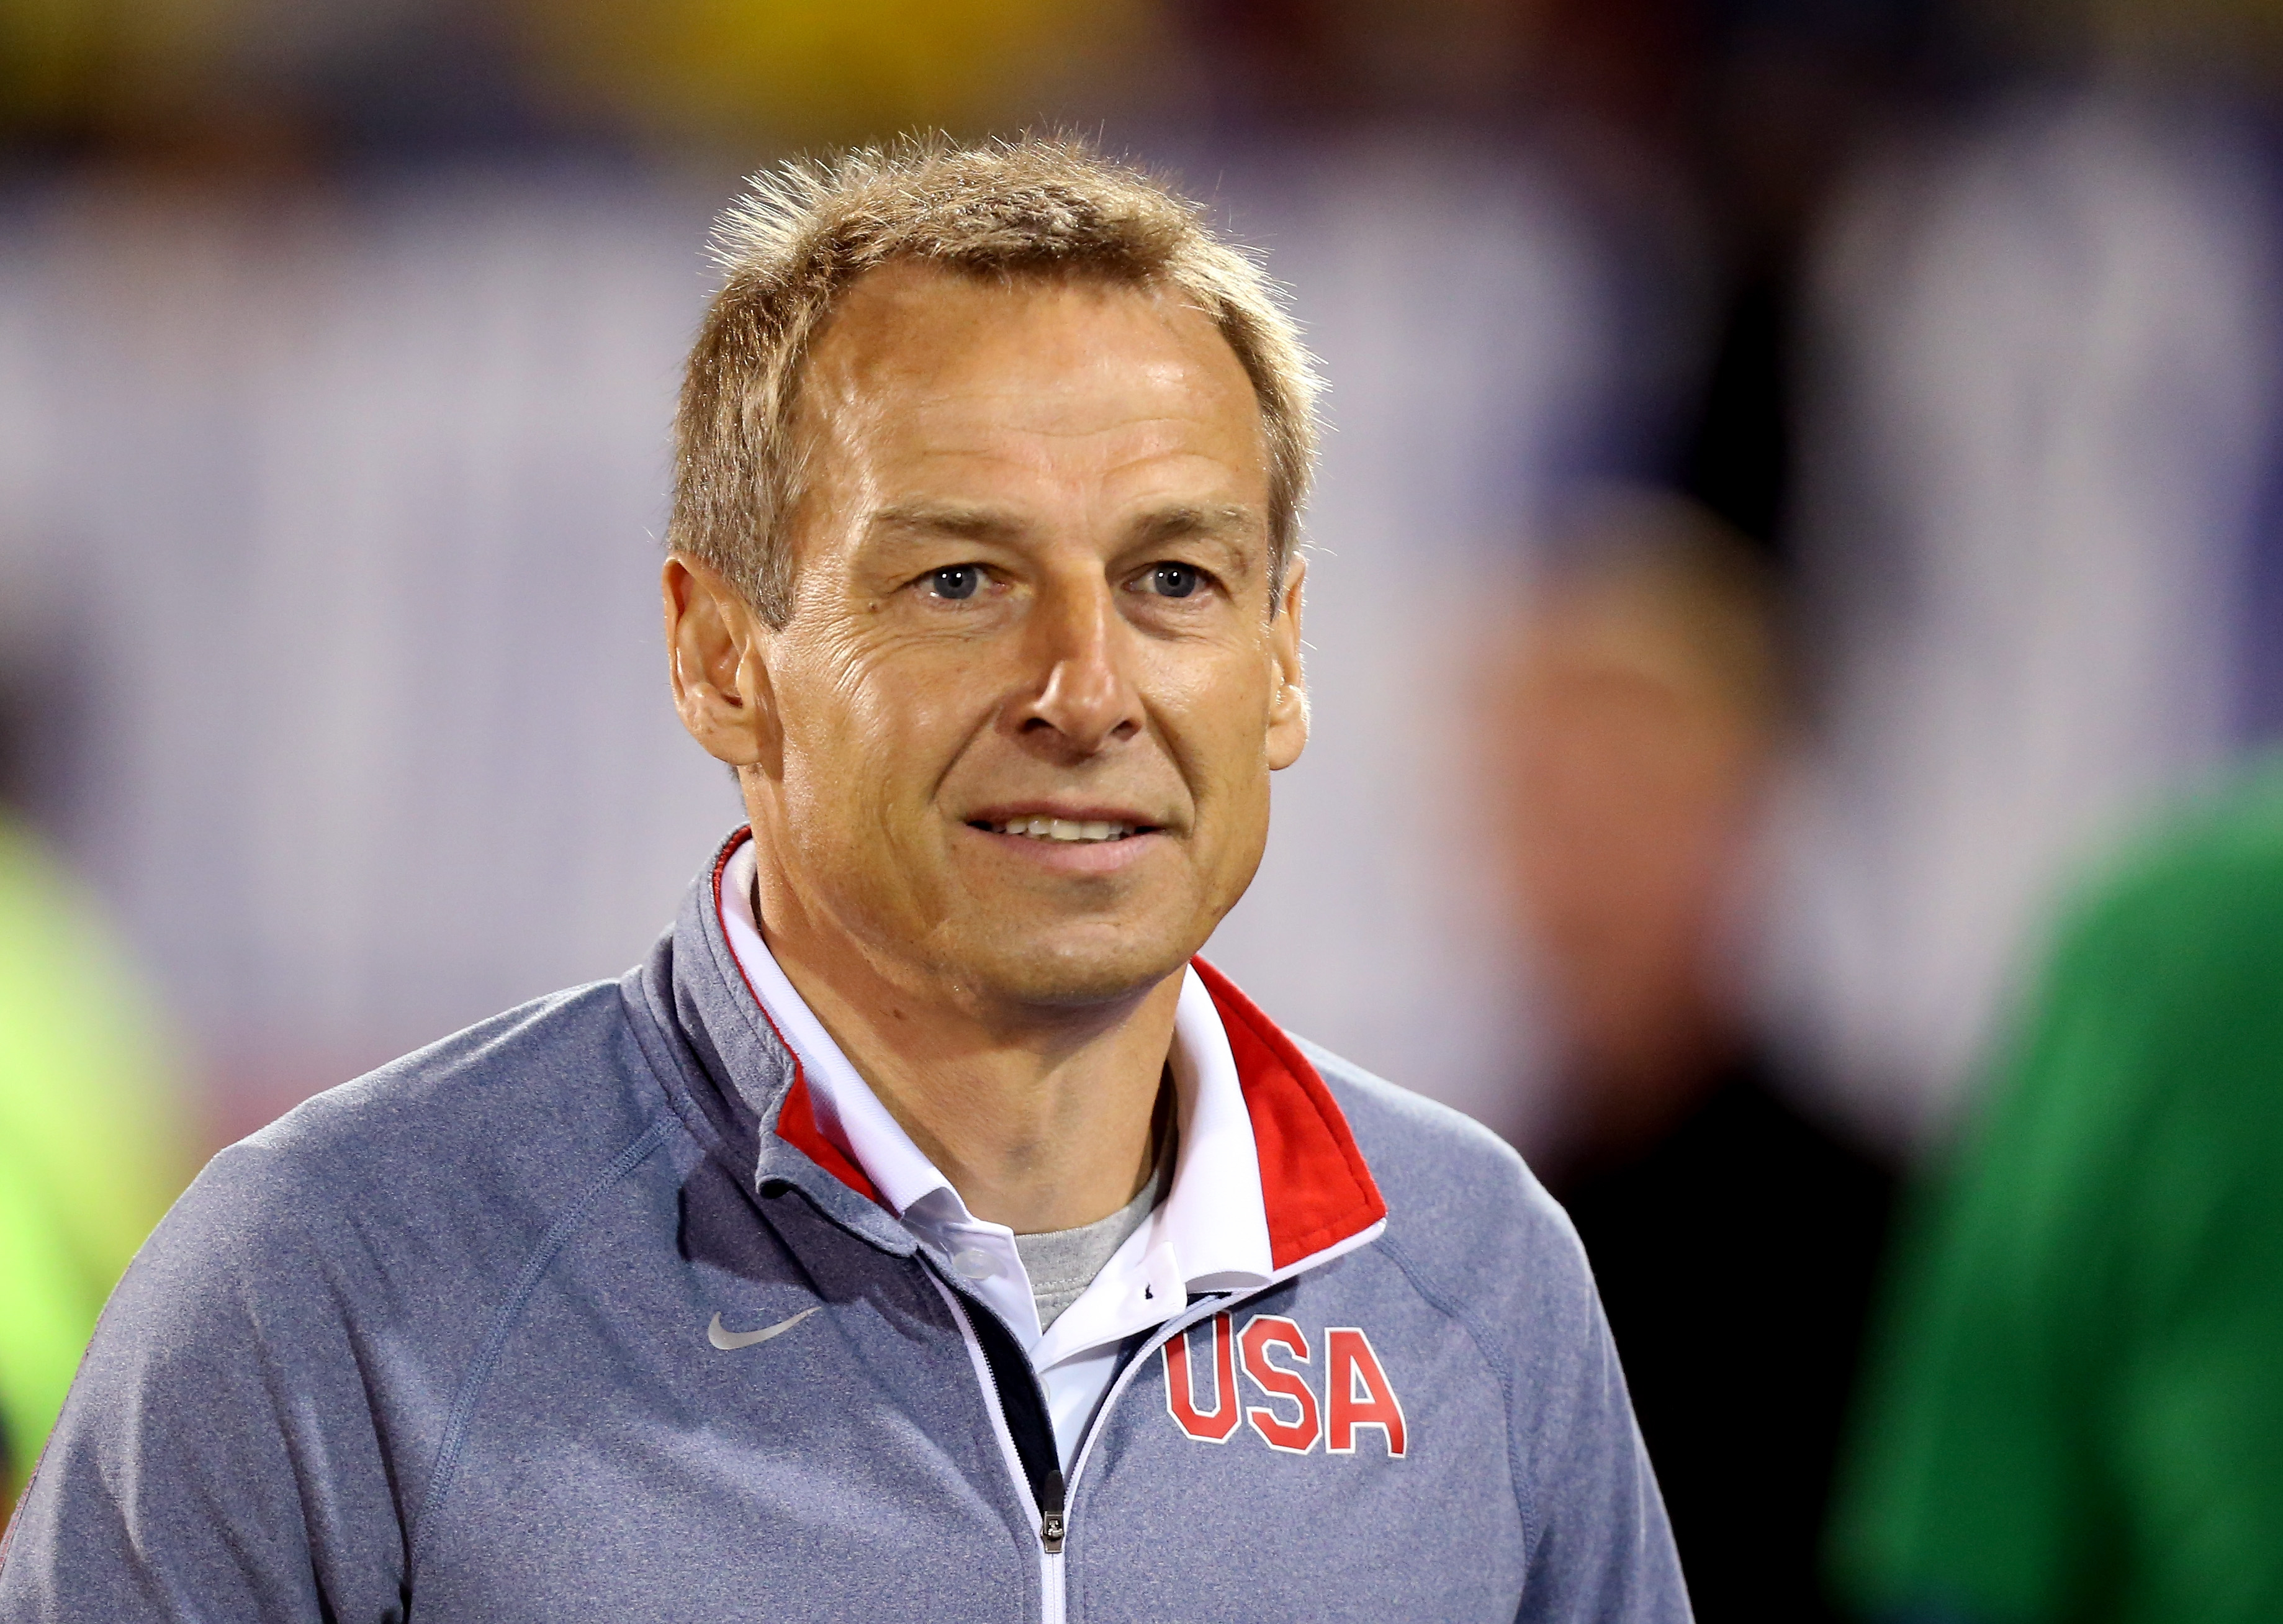 USMNT fans are raising money to fly a “Fire Klinsmann” banner